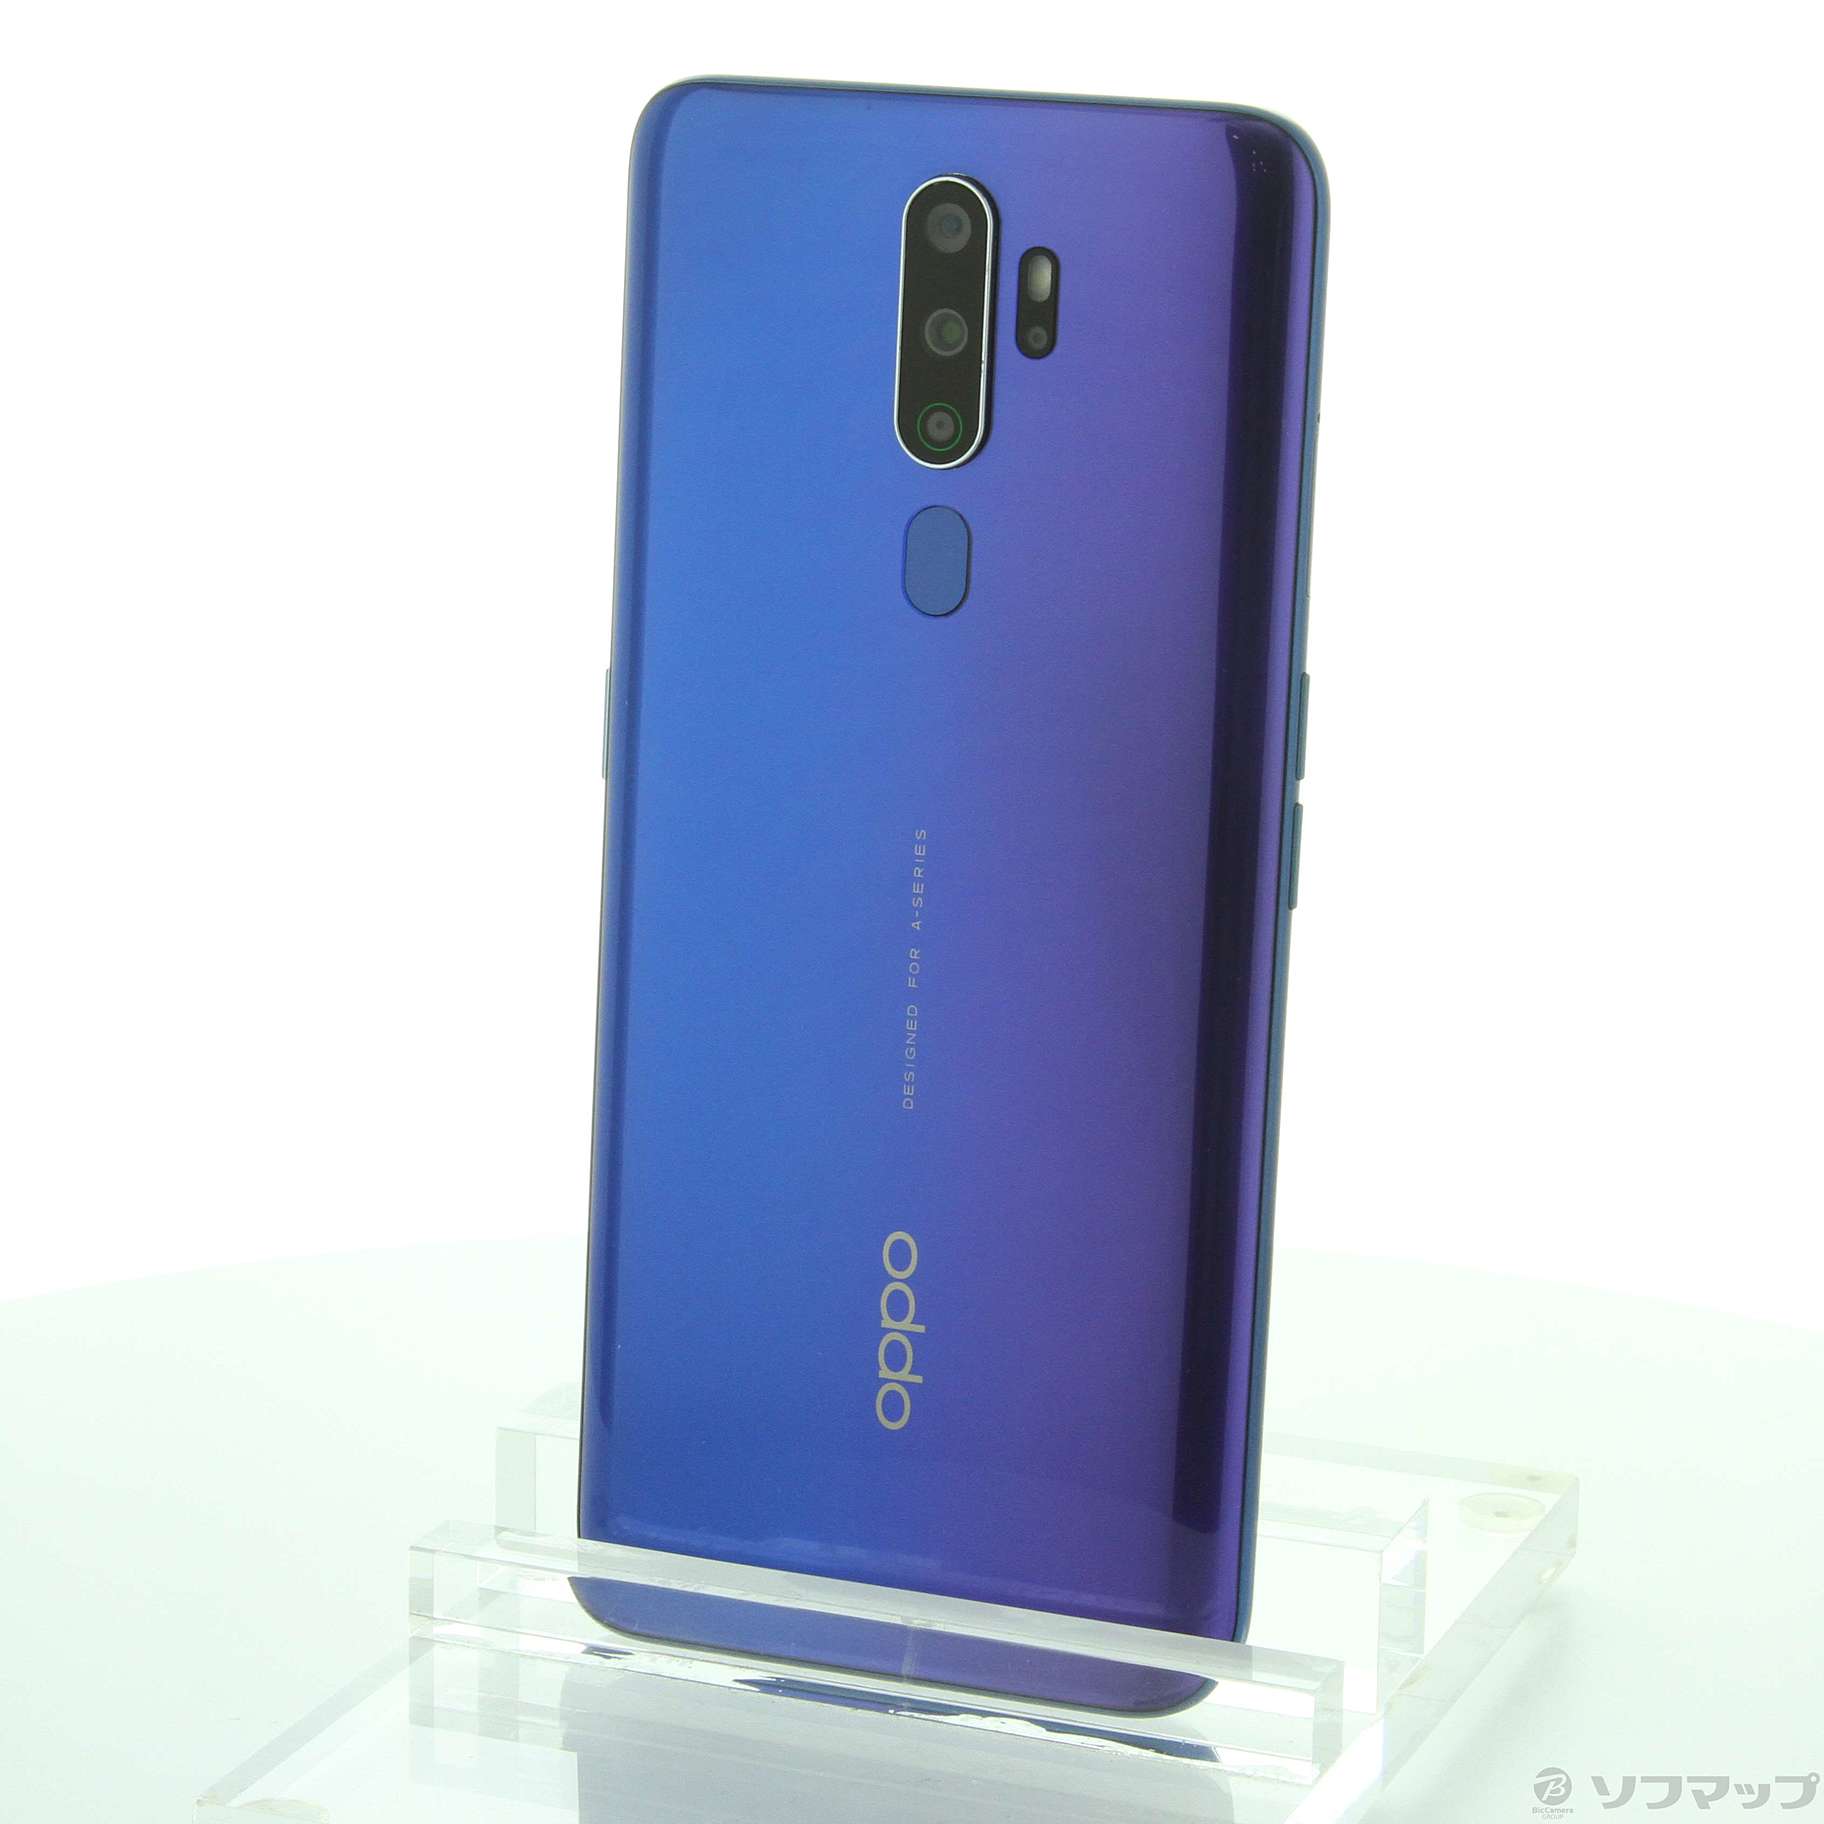 （オマケ付き）OPPO A5 2020 版 64GB ブルー CPH1943スマートフォン携帯電話